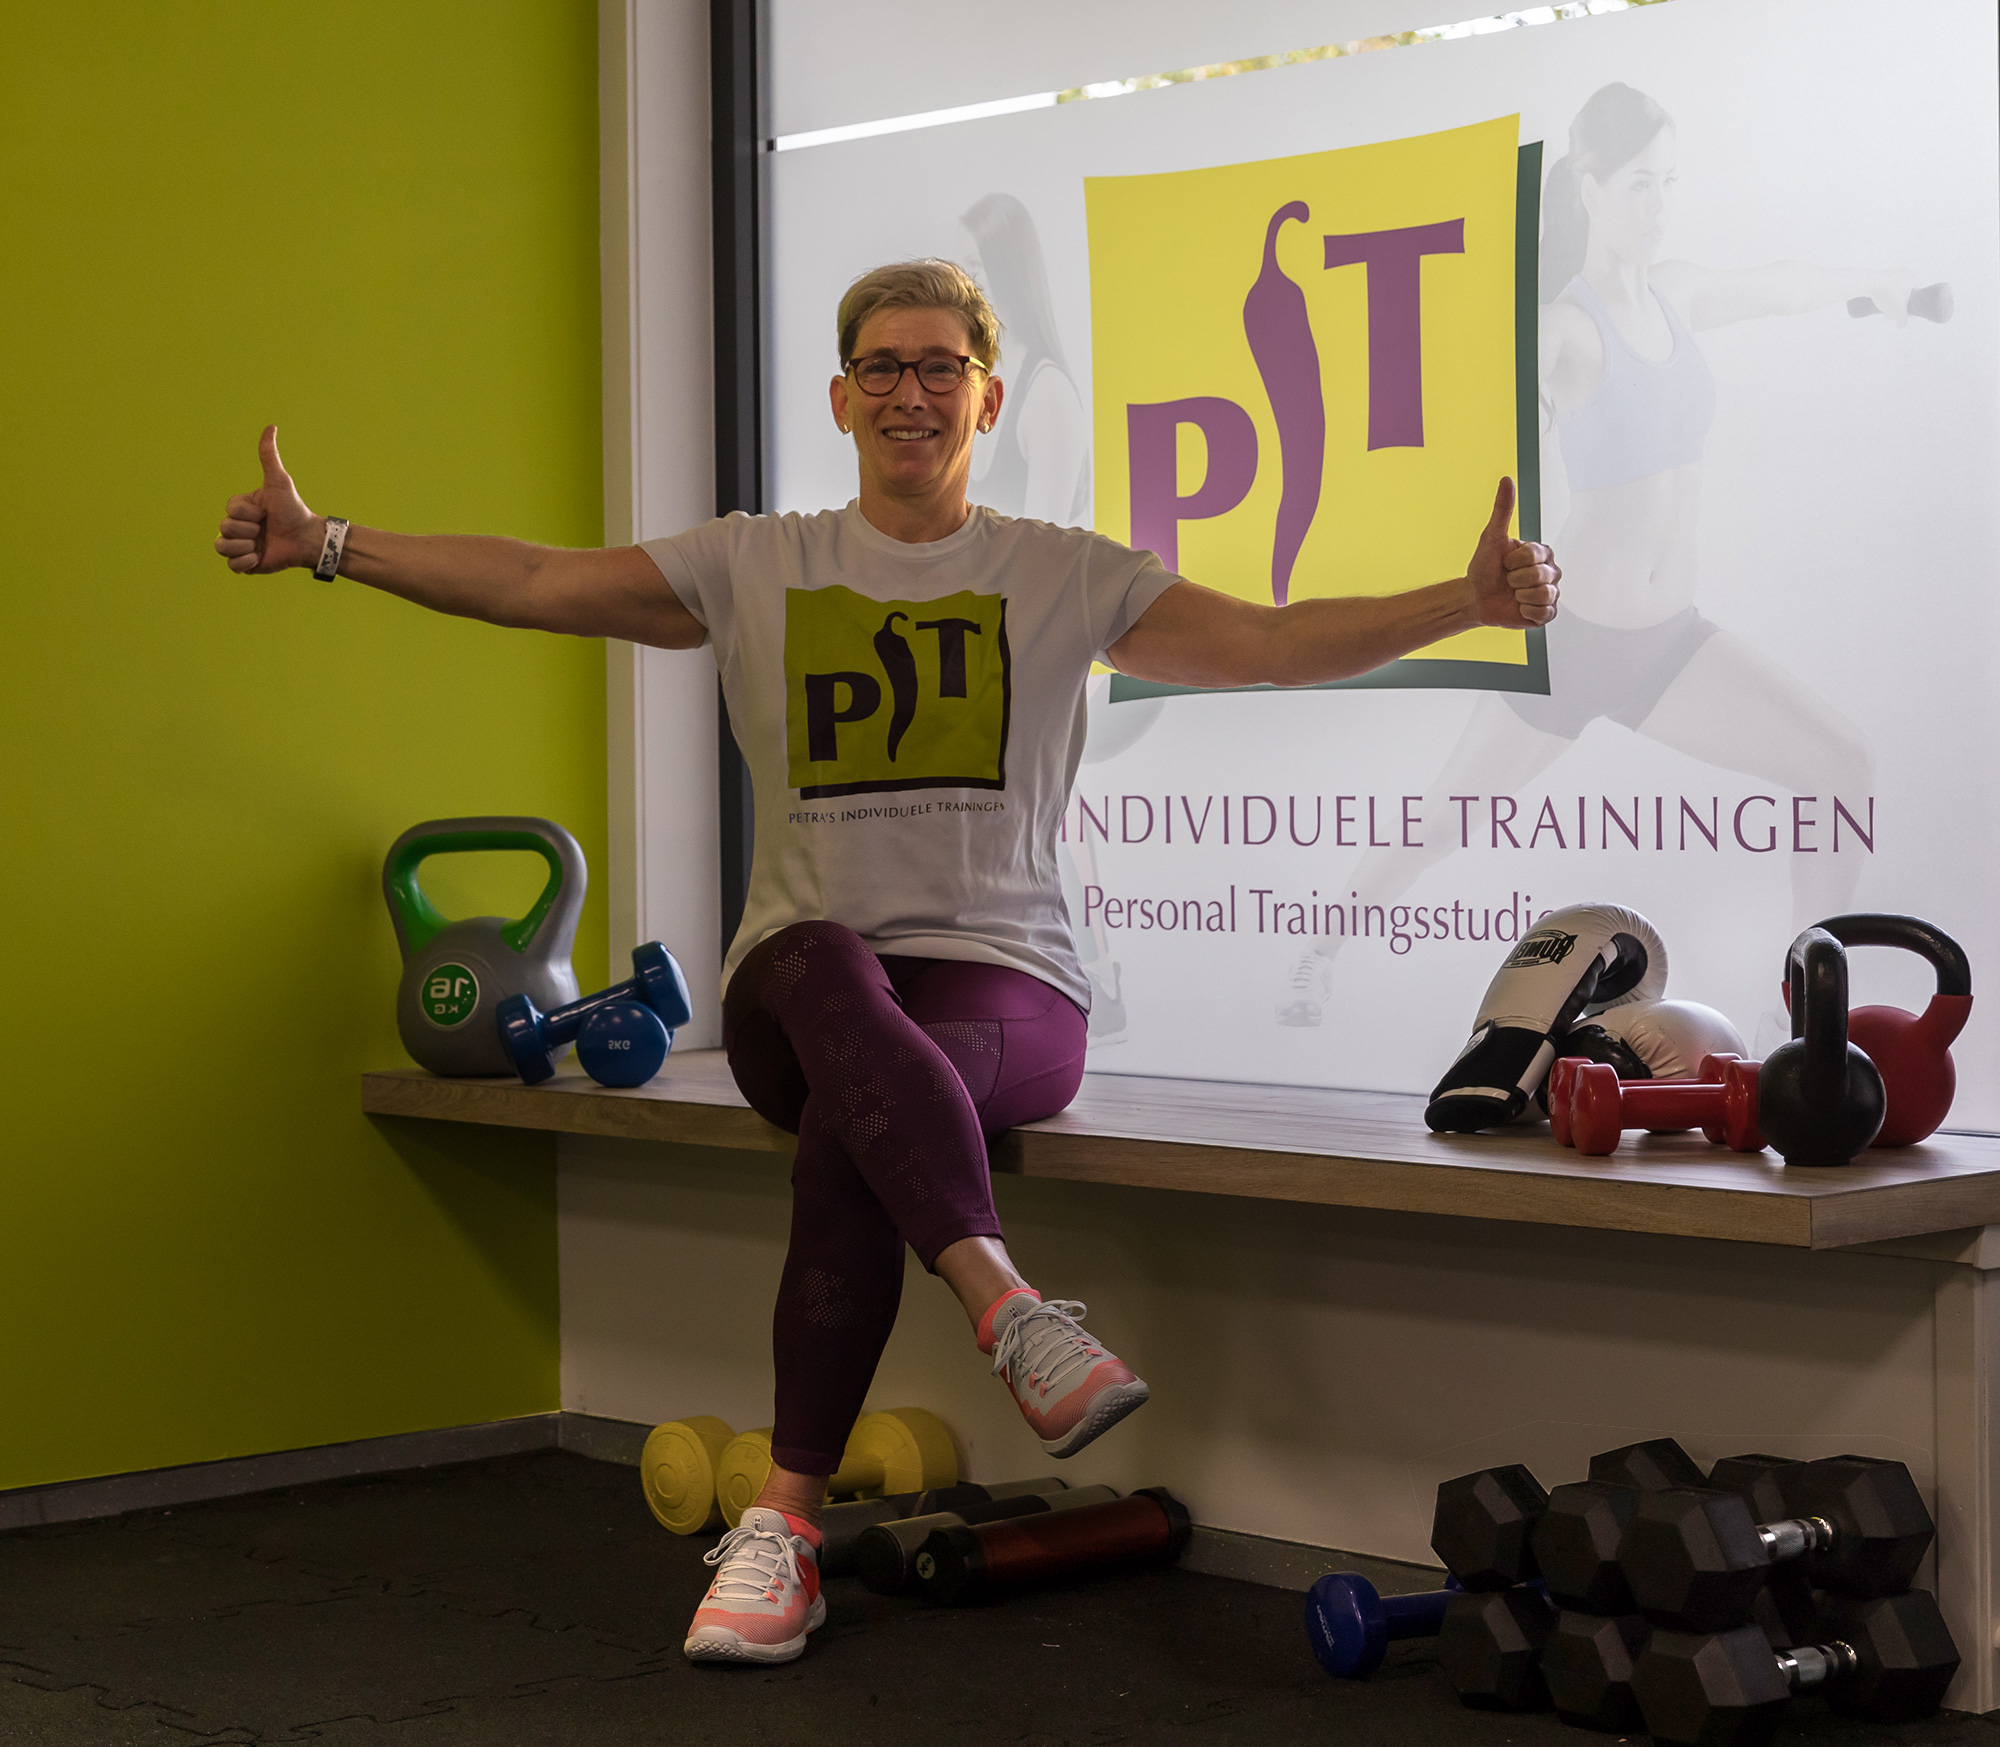 Personal Training in de stad met PiT-Sportief